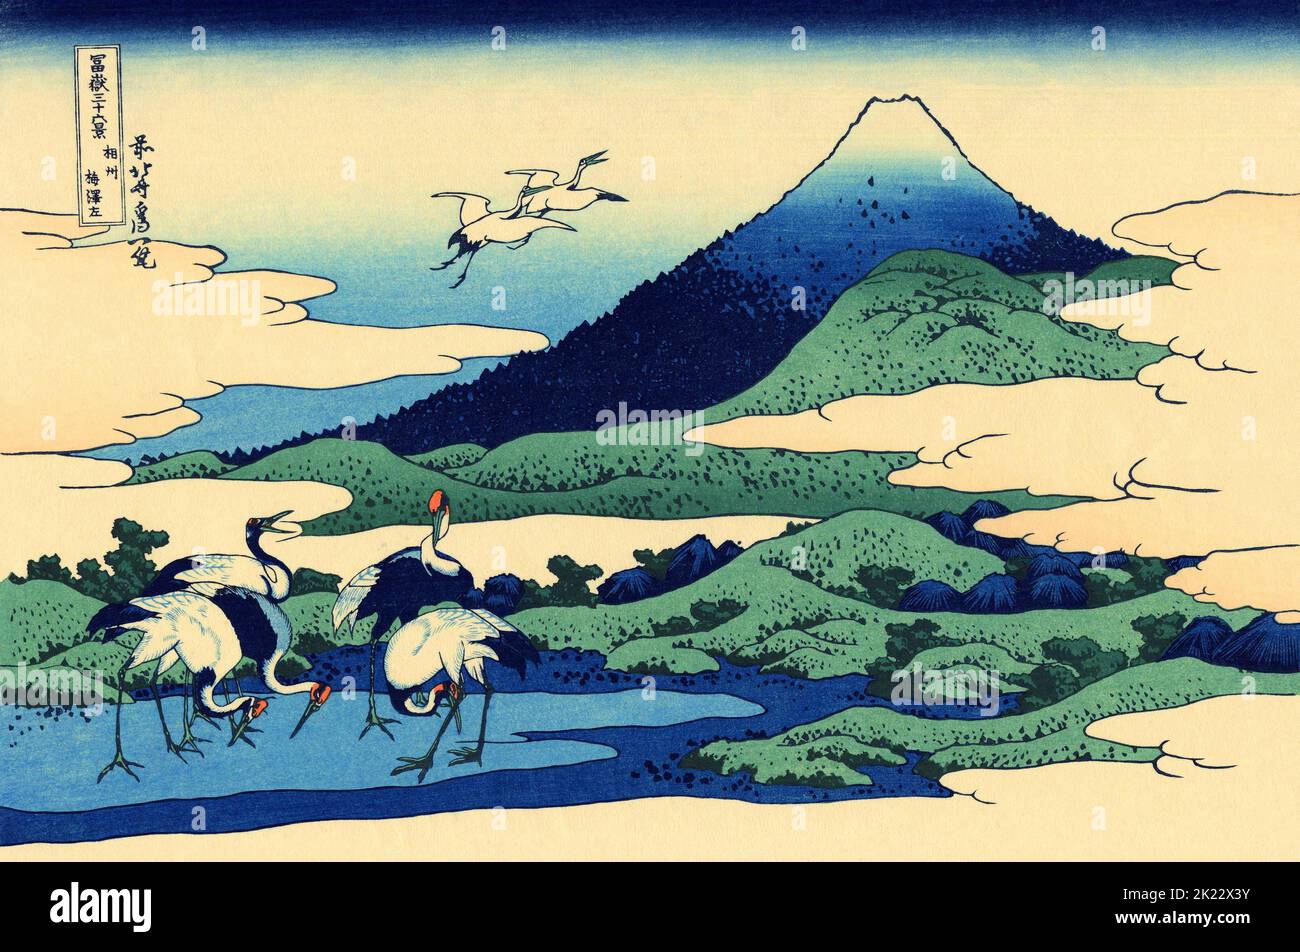 Japan: „Umegawa ‘der Provinz Sagami“. Ukiyo-e Holzschnitt aus der Serie ‘36 Ansichten des Fuji’ von Katsushika Hokusai (31. Oktober 1760 - 10. Mai 1849), c. 1830. ‘36 Views of Mount Fuji’ ist eine ‘„Sukiyo-e“-Serie großer Holzschnitte der Künstlerin Katsushika Hokusai. Die Serie zeigt den Fuji in unterschiedlichen Jahreszeiten und Wetterbedingungen an verschiedenen Orten und Entfernungen. Es besteht tatsächlich aus 46 Drucken, die zwischen 1826 und 1833 entstanden sind. Die ersten 36 wurden in die Originalpublikation aufgenommen, und aufgrund ihrer Popularität wurden nach der Originalpublikation 10 weitere hinzugefügt. Stockfoto